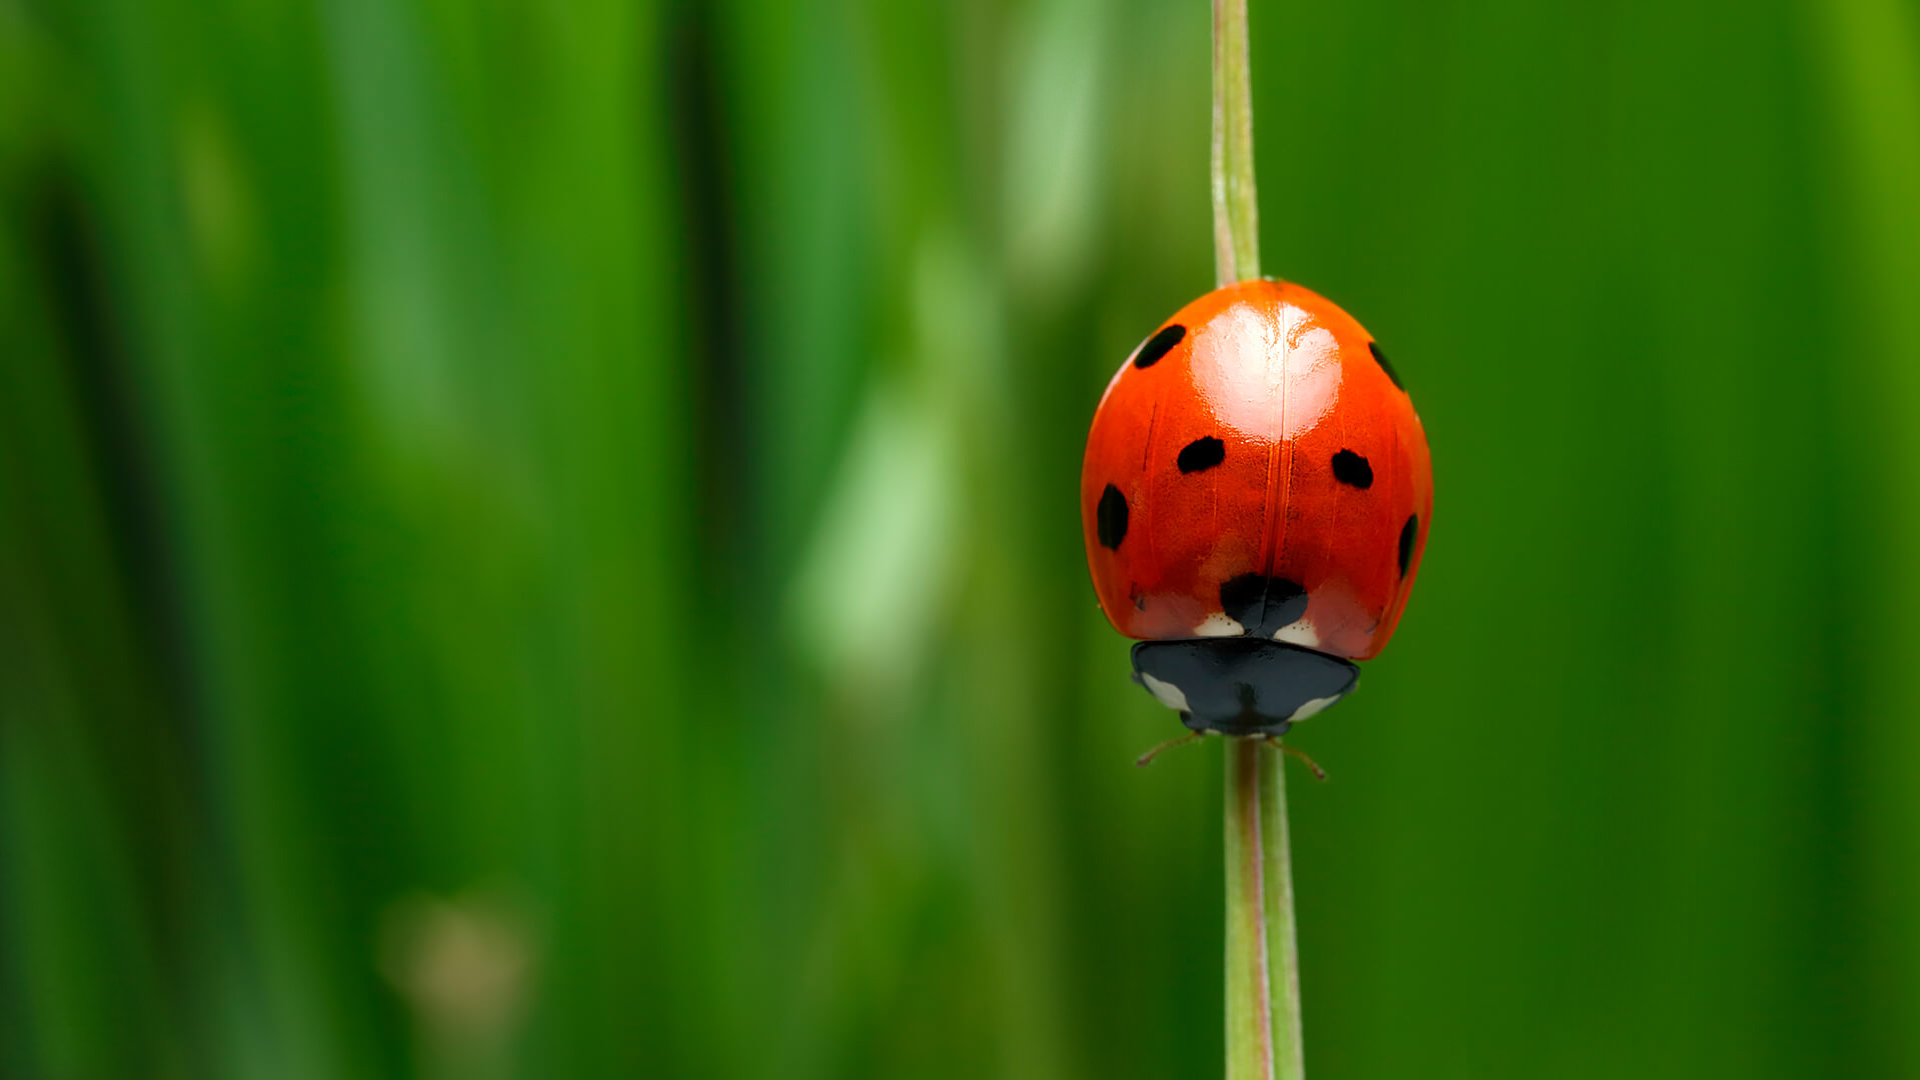 bọ rùa  bọ rùa (Ảnh: RonBerg trên Pixabay) Được biết đến như một lá bùa may mắn và là một dấu hiệu của tình cảm, người ta cho rằng bạn sẽ là chủ nhân của nó khi bắt được một con bọ rùa và sau đó thả nó ra. Con côn trùng sẽ liên tục thì thầm tên bạn vào tai người bạn yêu.  Nông dân tin rằng sự hiện diện của bọ rùa tượng trưng cho sự phong phú và thịnh vượng vì điều đó có nghĩa là có một quần thể thợ săn rệp phát triển mạnh sẽ bảo vệ mùa màng của họ.  Theo những người tin vào tâm linh, những đốm bọ rùa quyết định thời gian điều ước của người yêu sẽ thành hiện thực. 